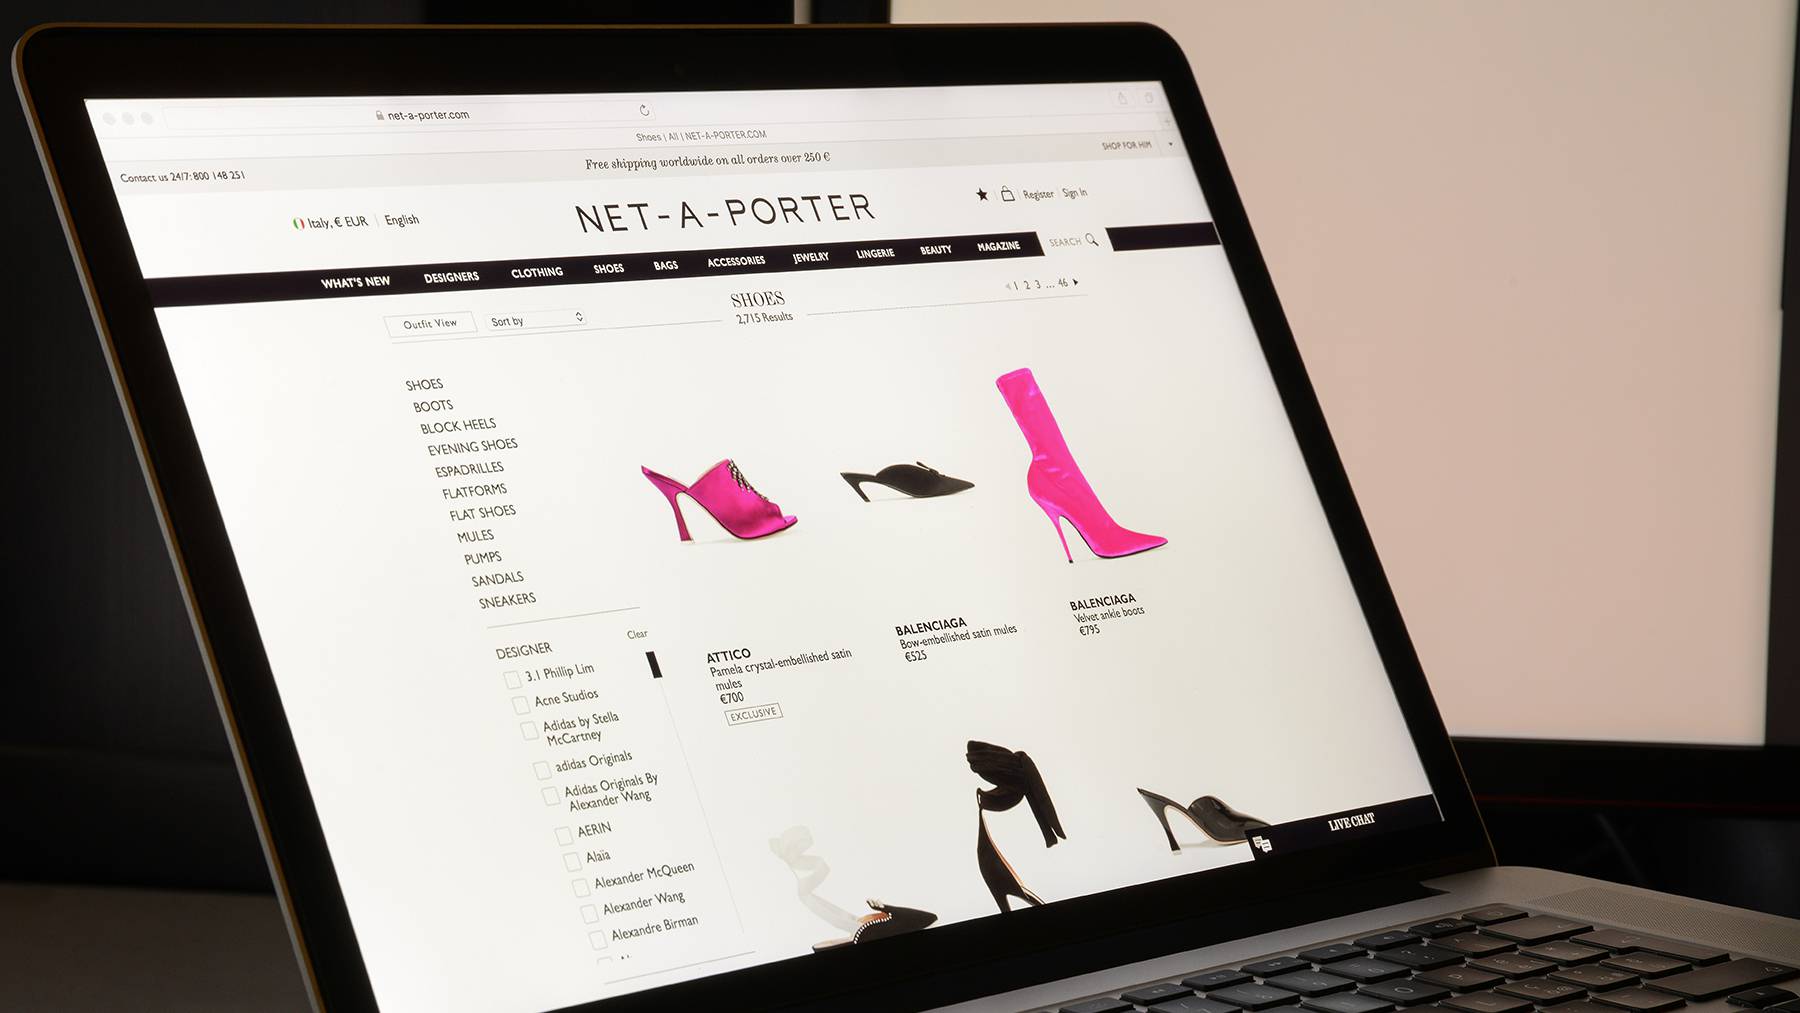 The Net-a-Porter Website.